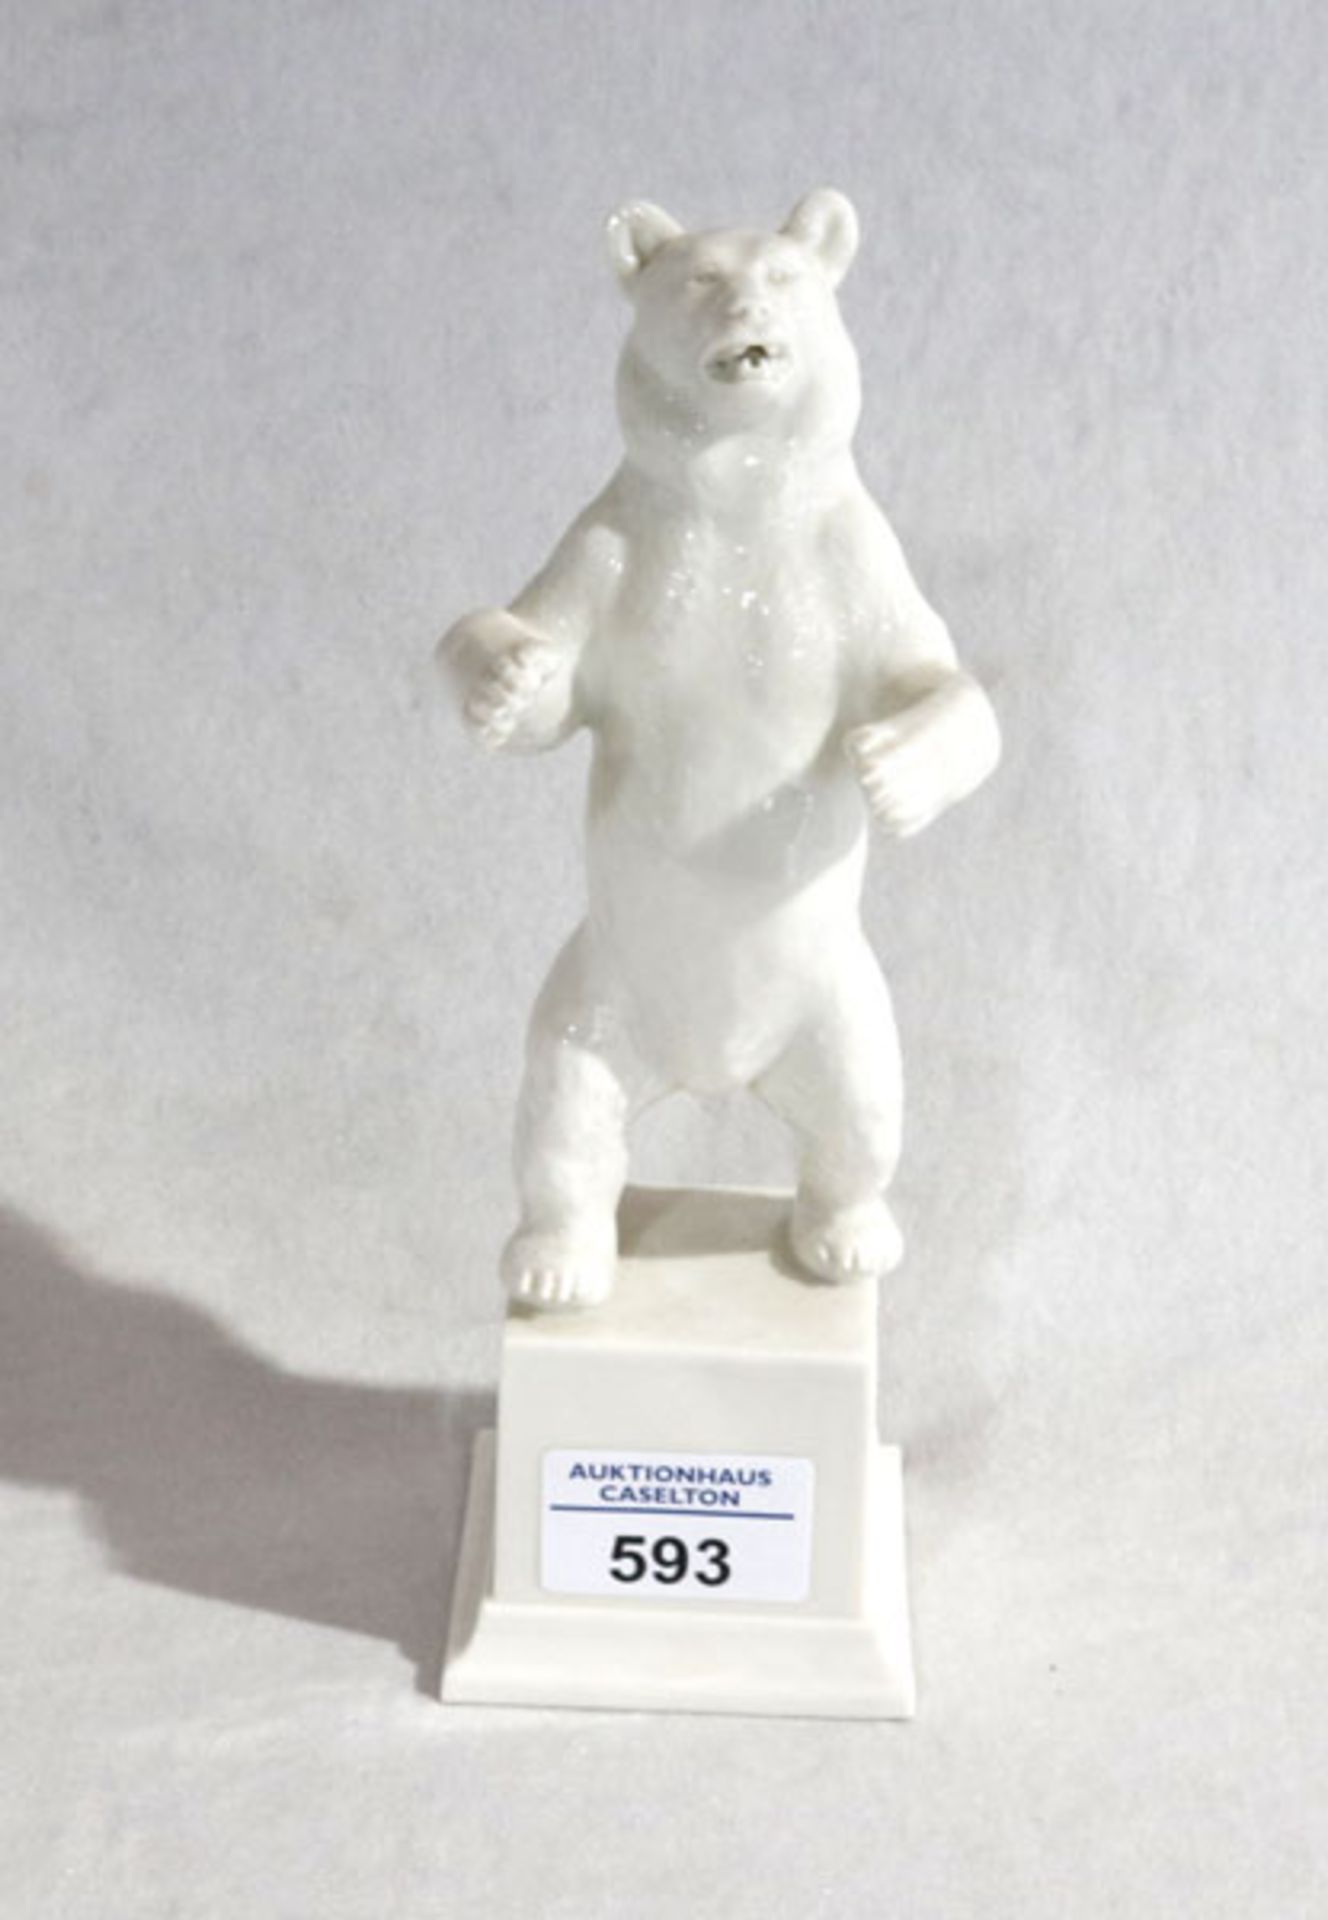 Allach Porzellanskulptur 'Stehender Bär', weiß glasiert, im Boden Allach-Runenmarke und 'F.NAGY'